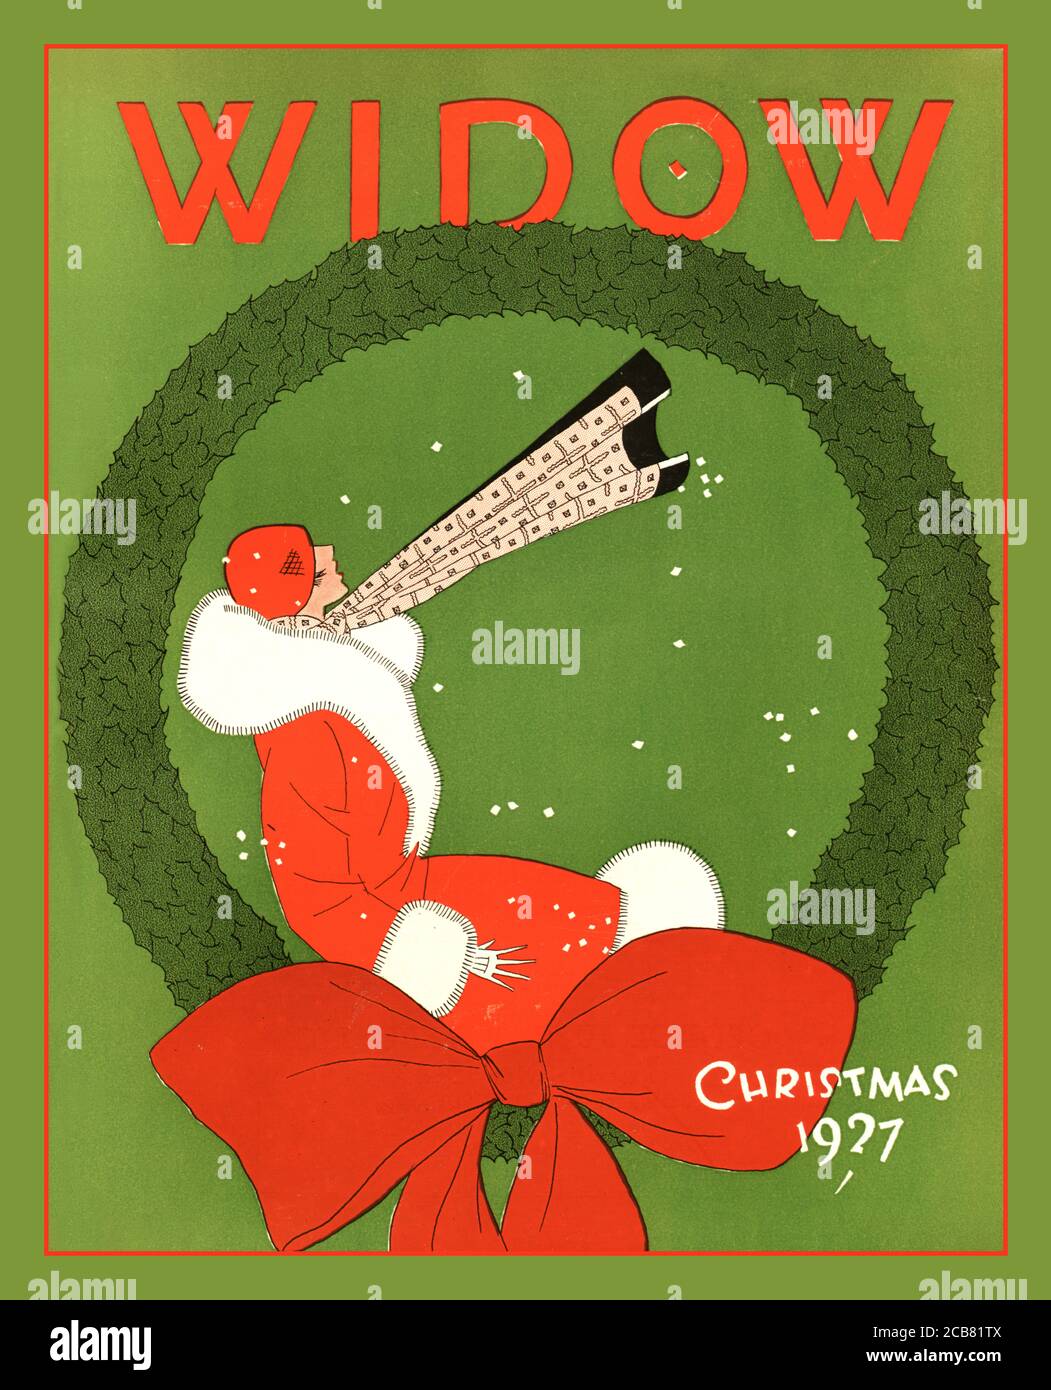 Vintage Christmas Cover The Widow 1927 Christmas Cover The Widow’s Name stammt von der College Witwe, einem Spitznamen der Cornell University für eine attraktive, nicht verfügbare Studentin Stockfoto